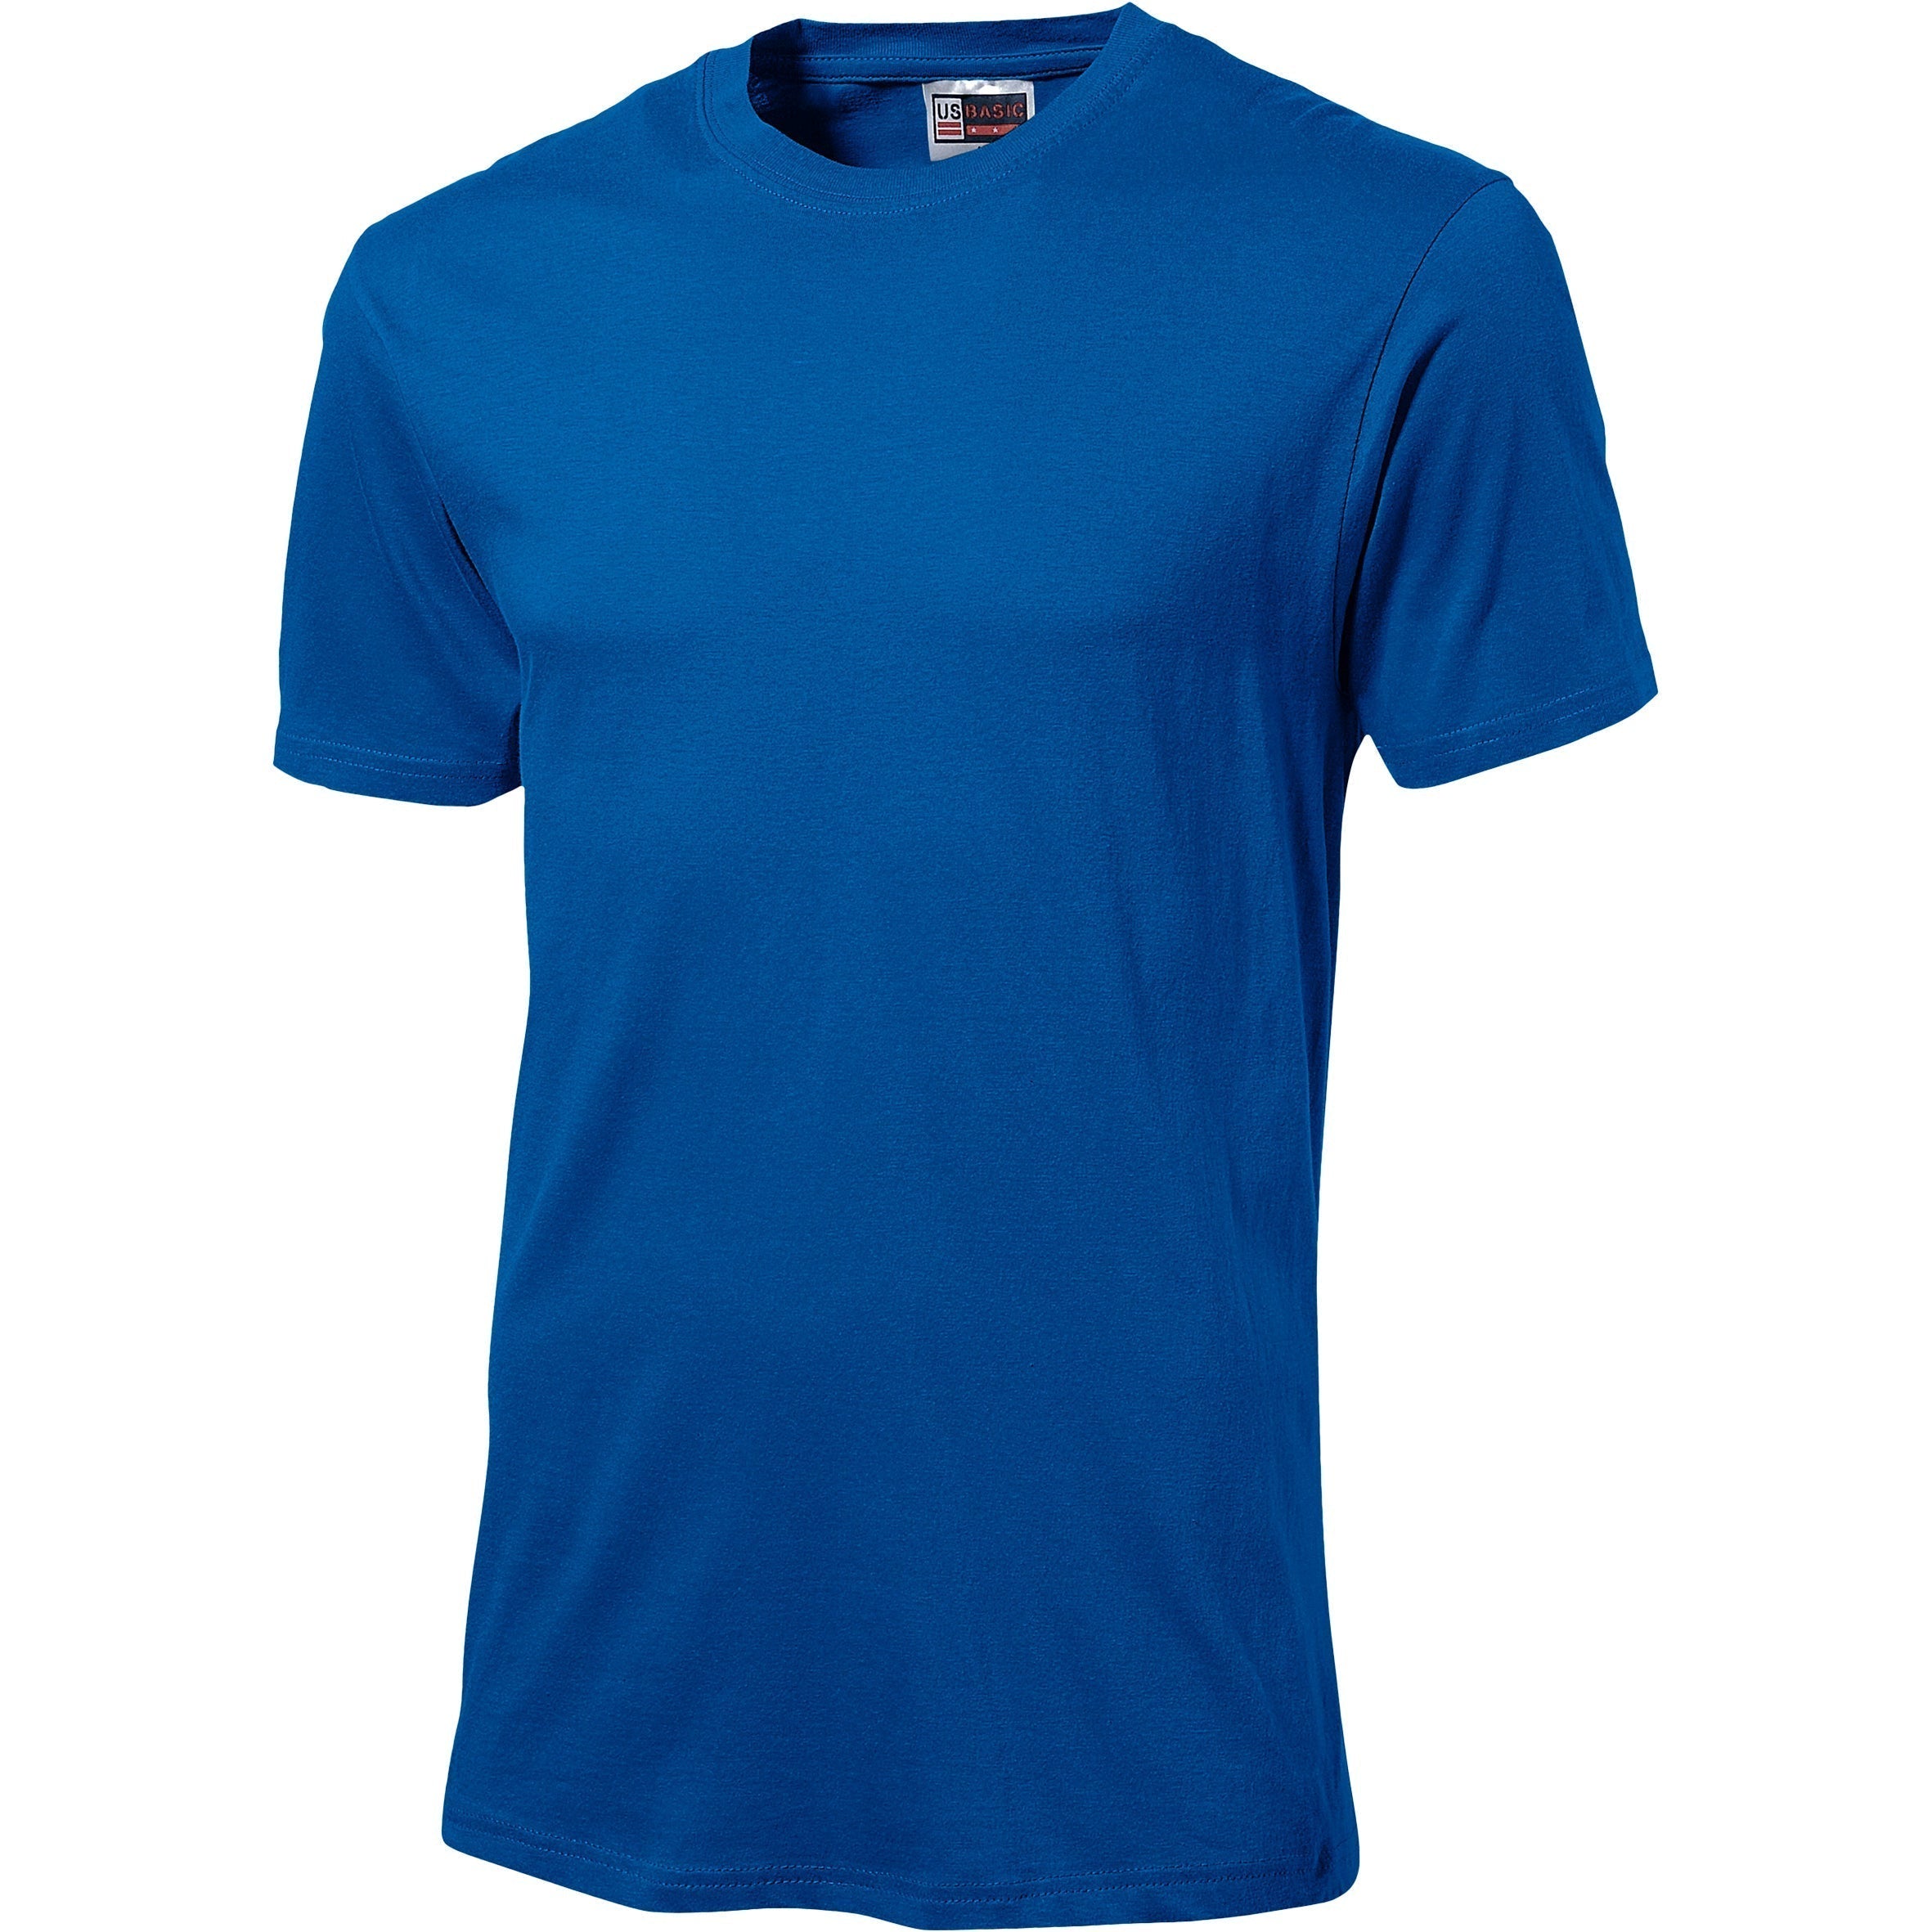 Unisex Super Club 165 T-Shirt-2XL-Blue-BU